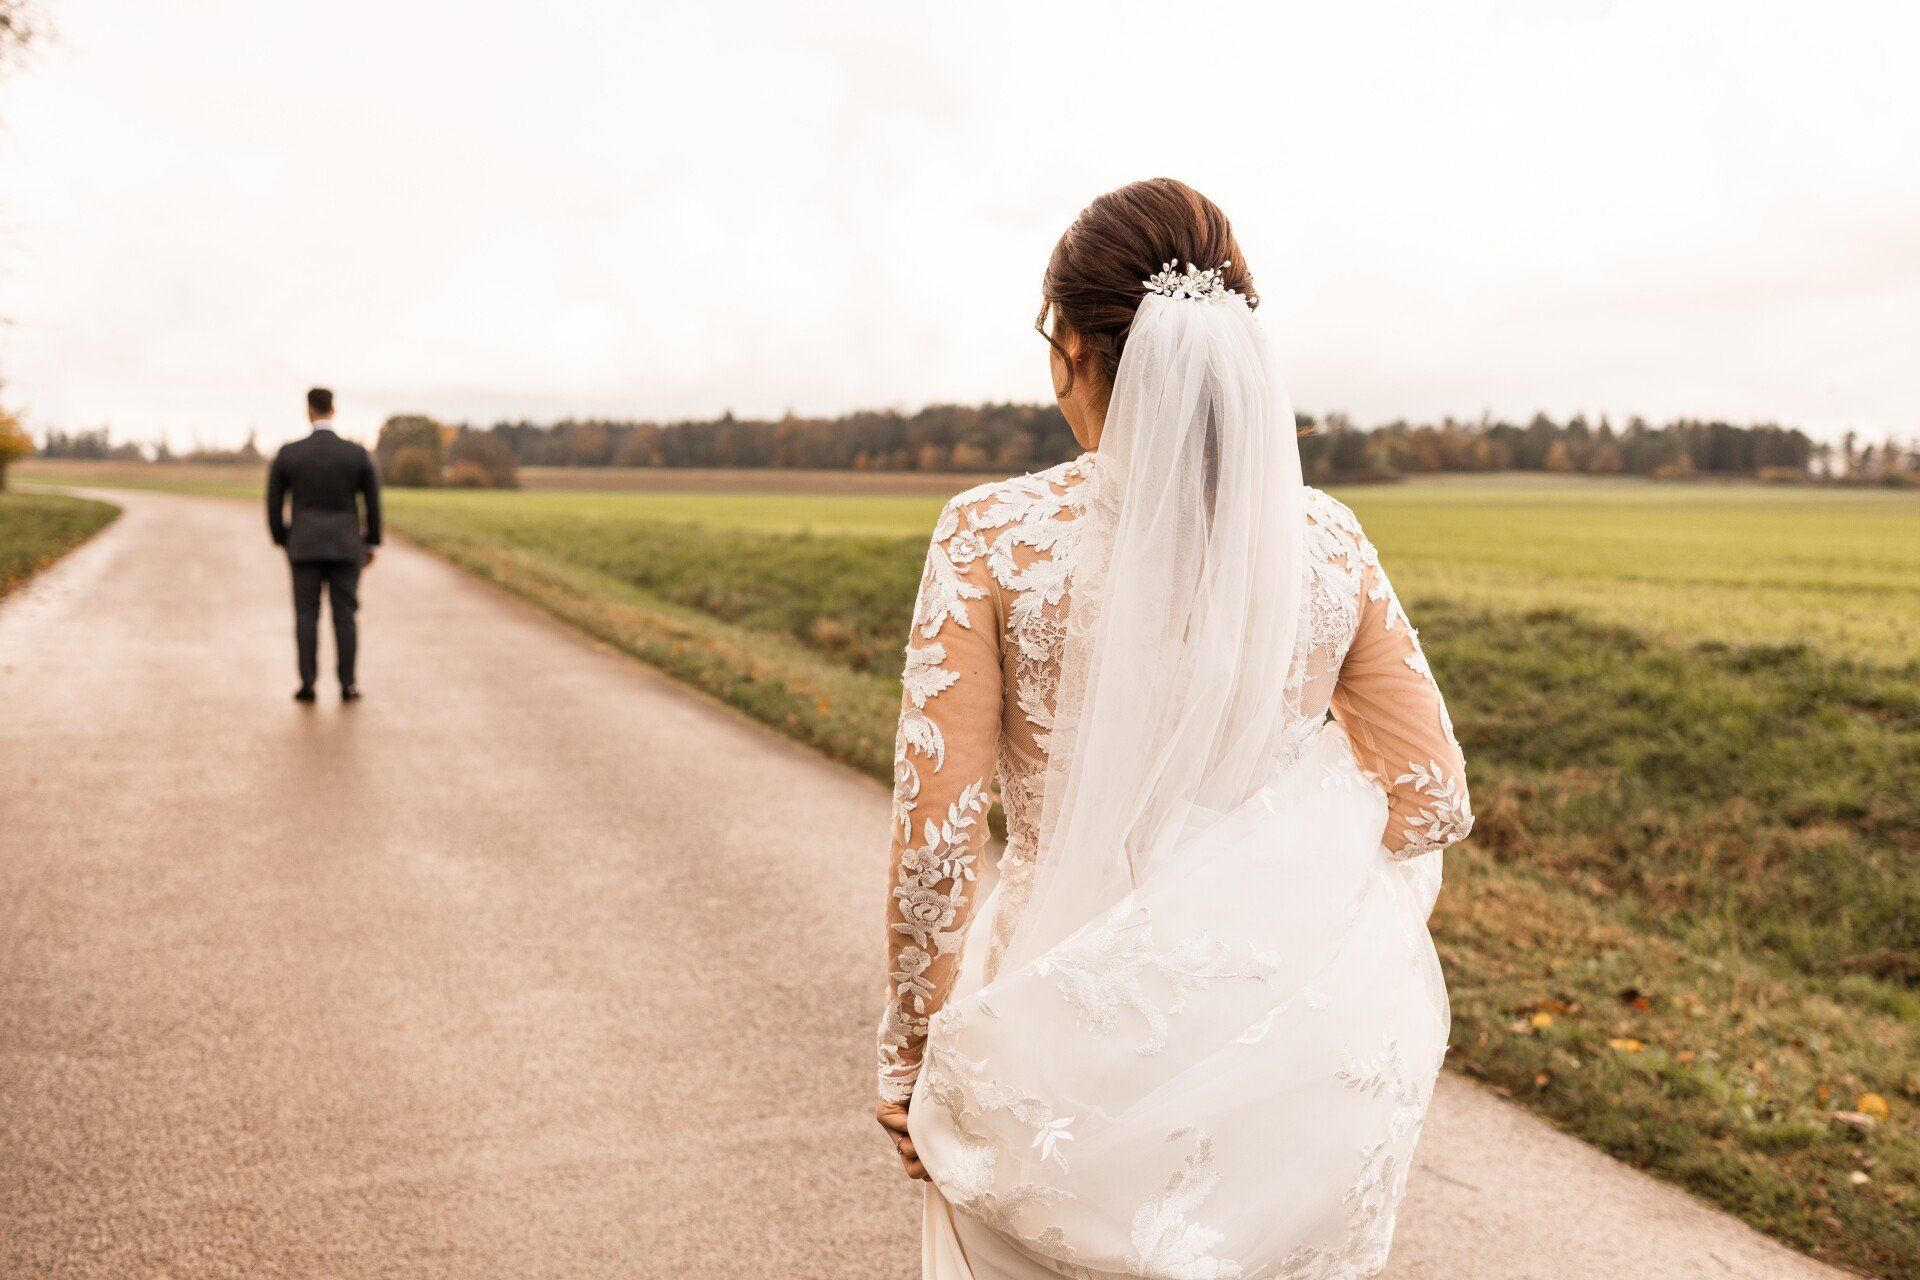 Auf diesem Foto sieht man die Braut, die auf ihren Bräutigam zugeht